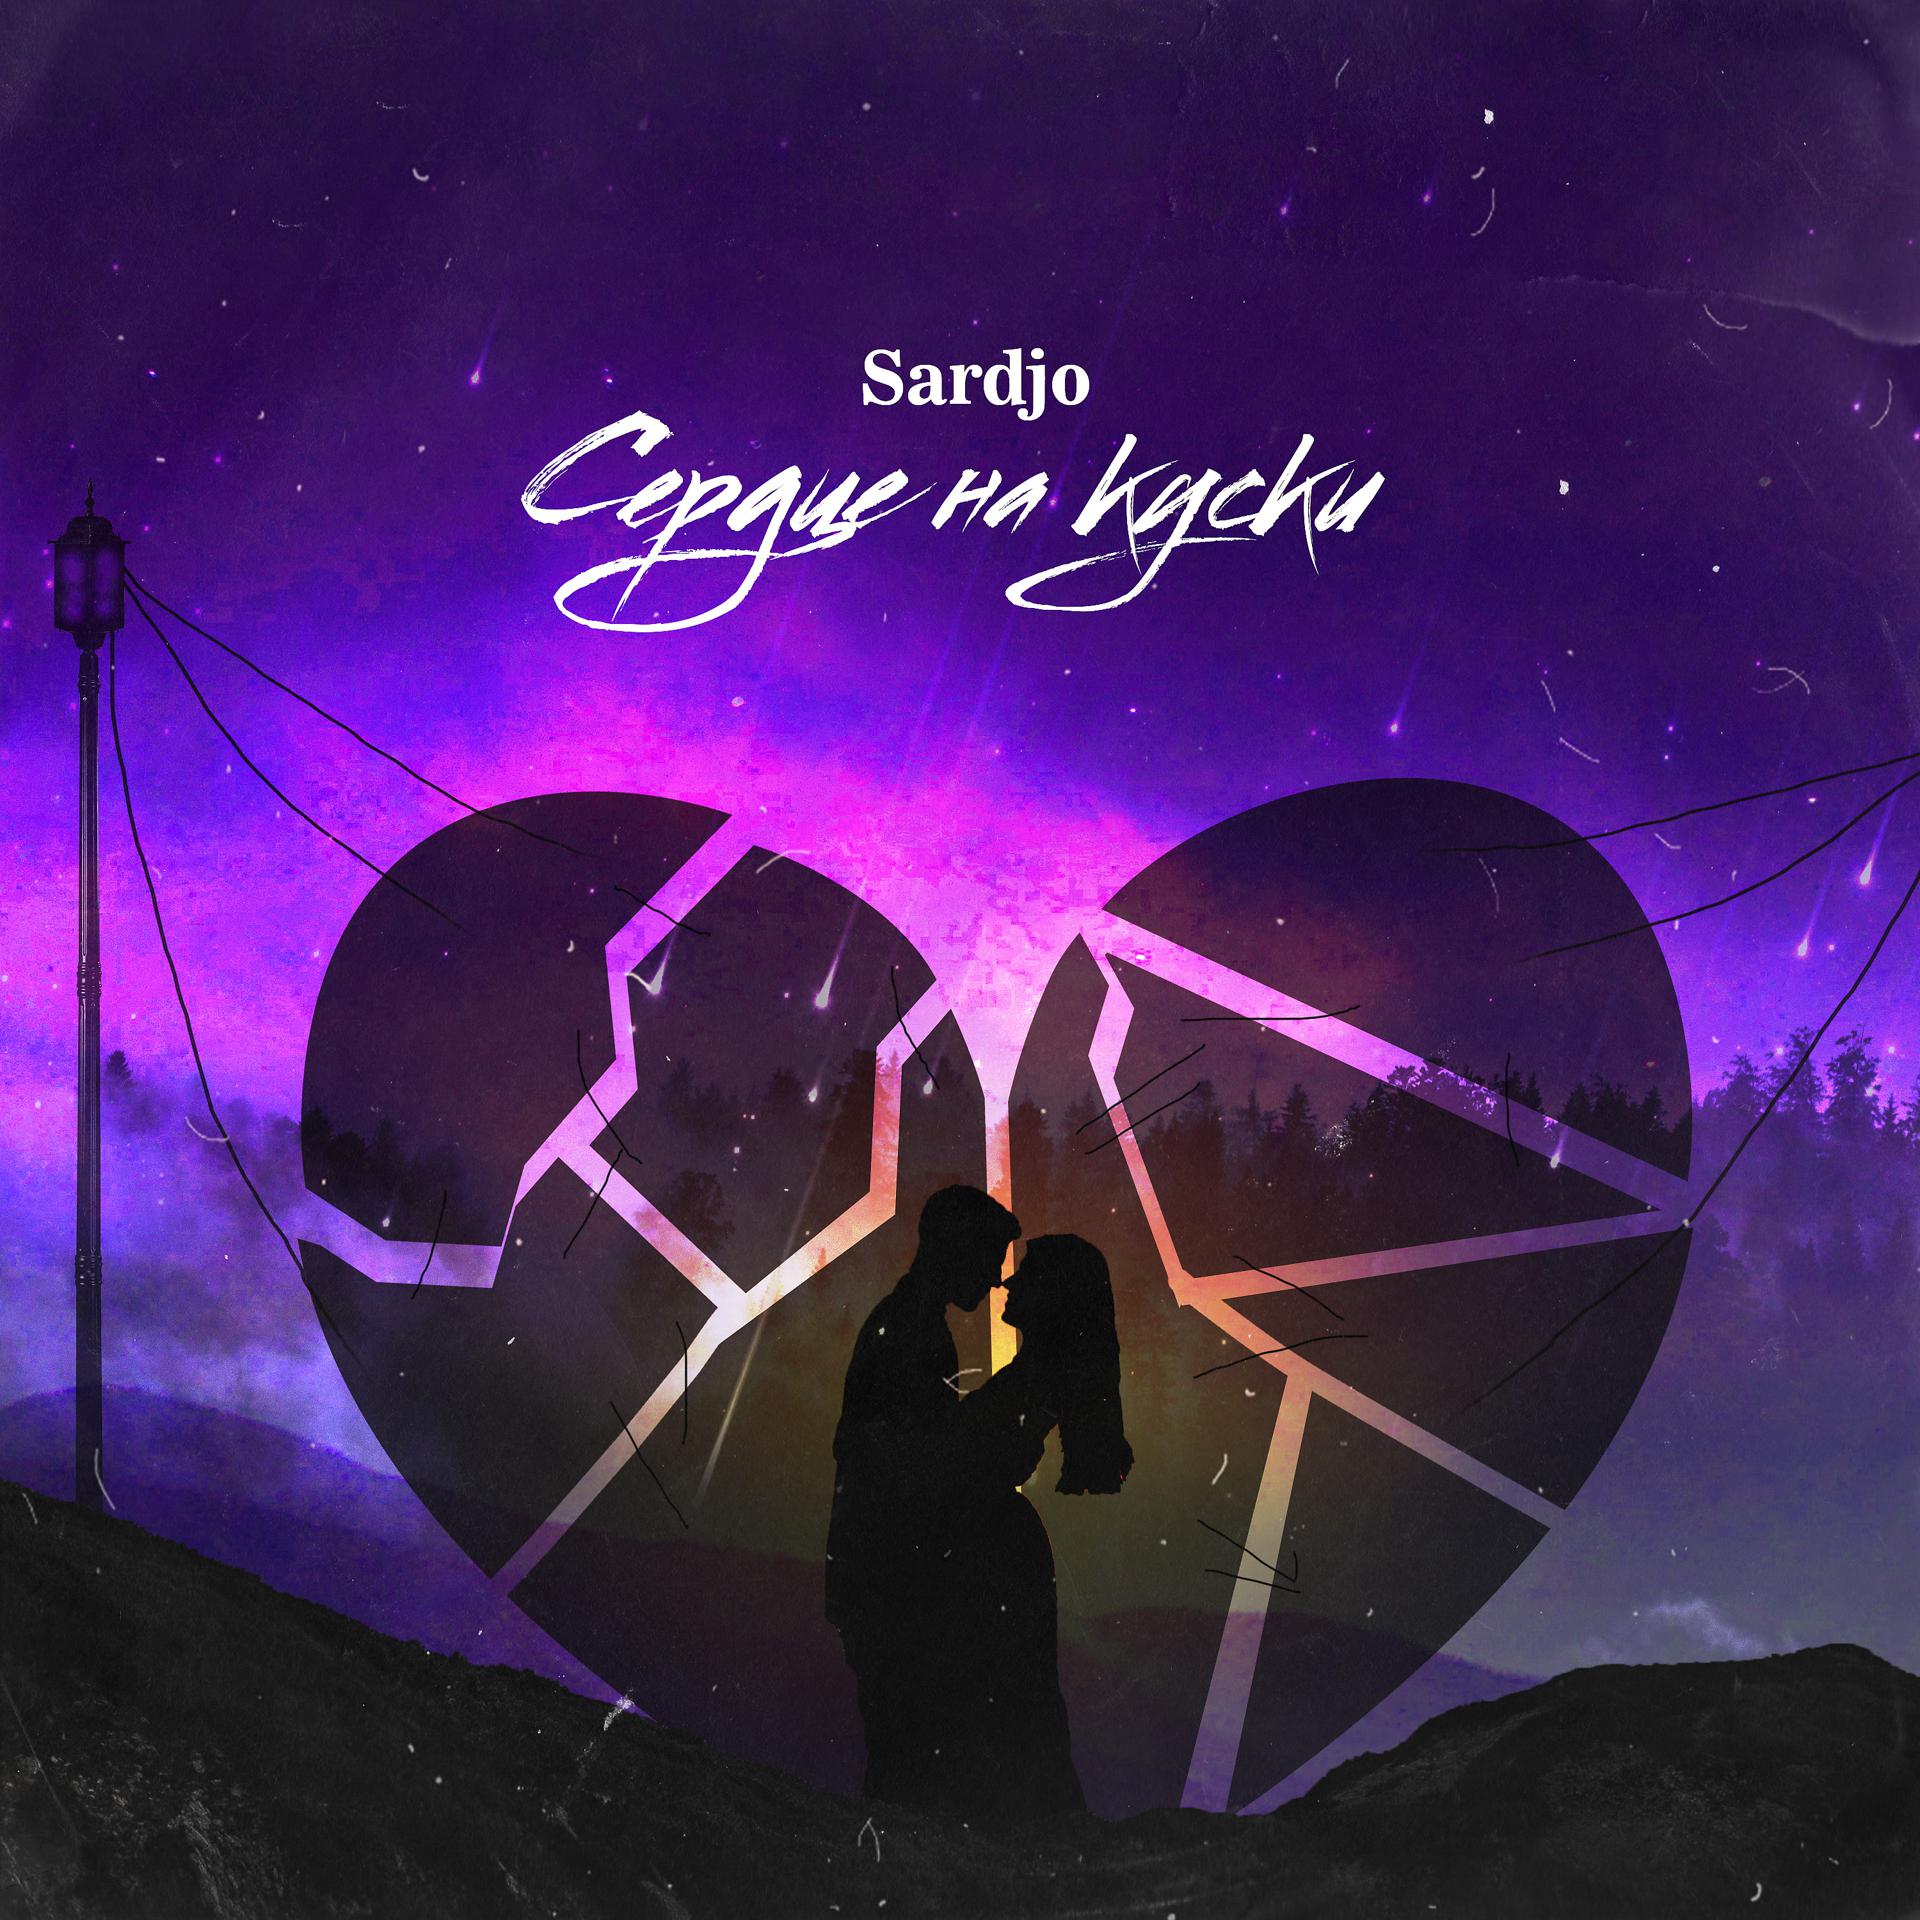 Постер к треку Sardjo - Сердце на куски